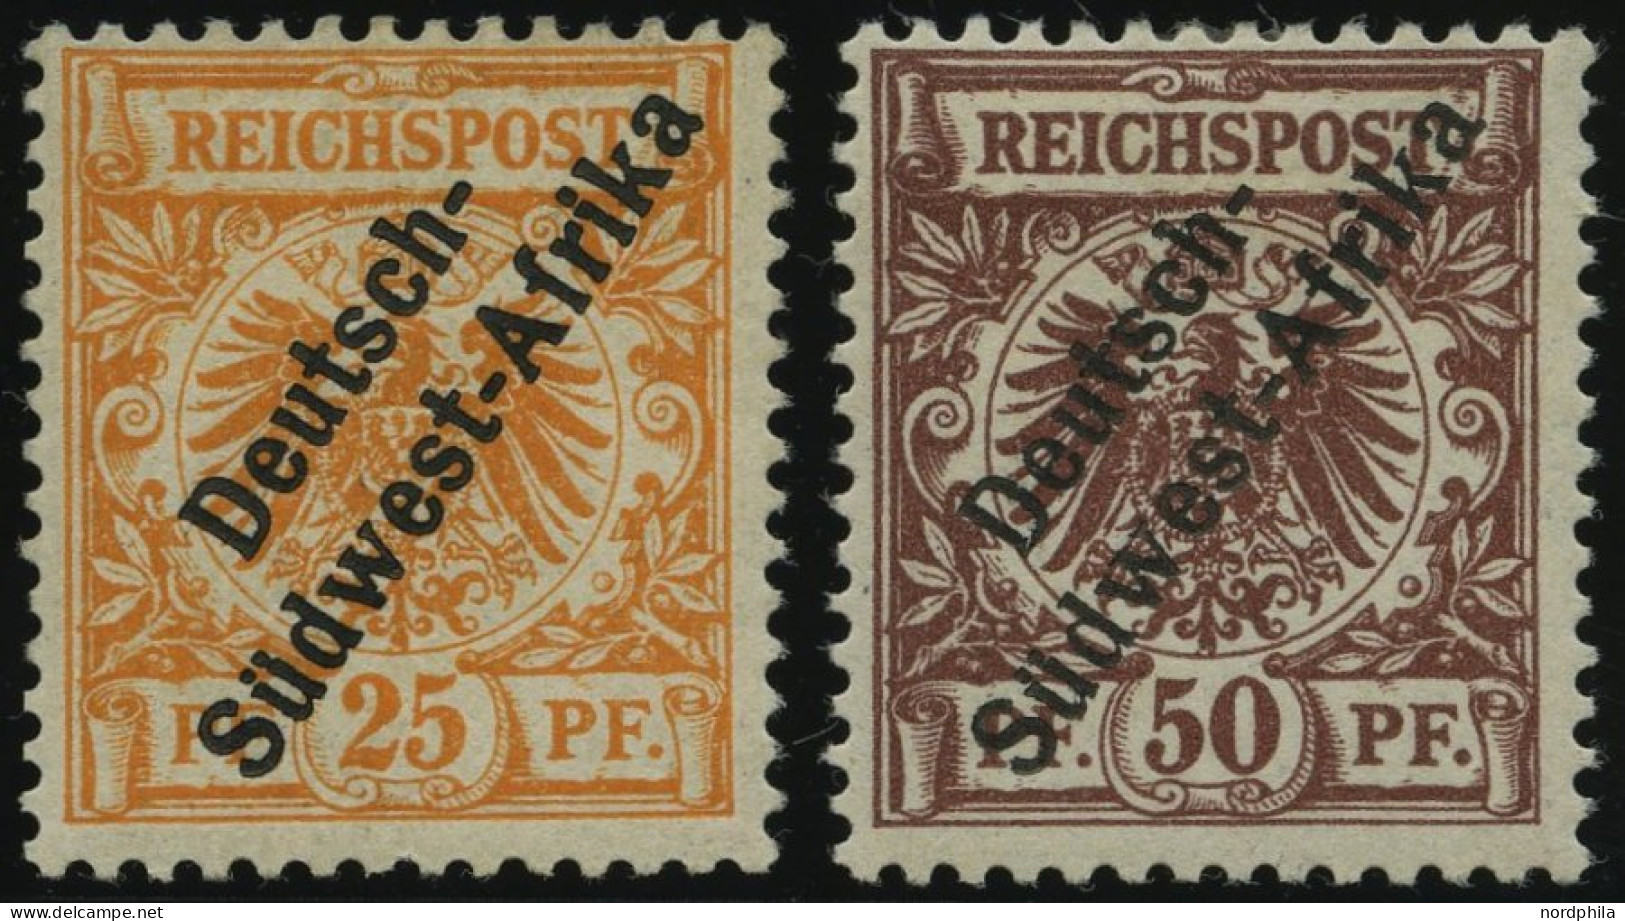 DSWA Ia,II , 1897, 25 Pf. Gelblichorange Und 50 Pf. Lebhaftrötlichbraun, Falzreste, 2 Prachtwerte, Gepr. W. Engel, Mi. 5 - Sud-Ouest Africain Allemand